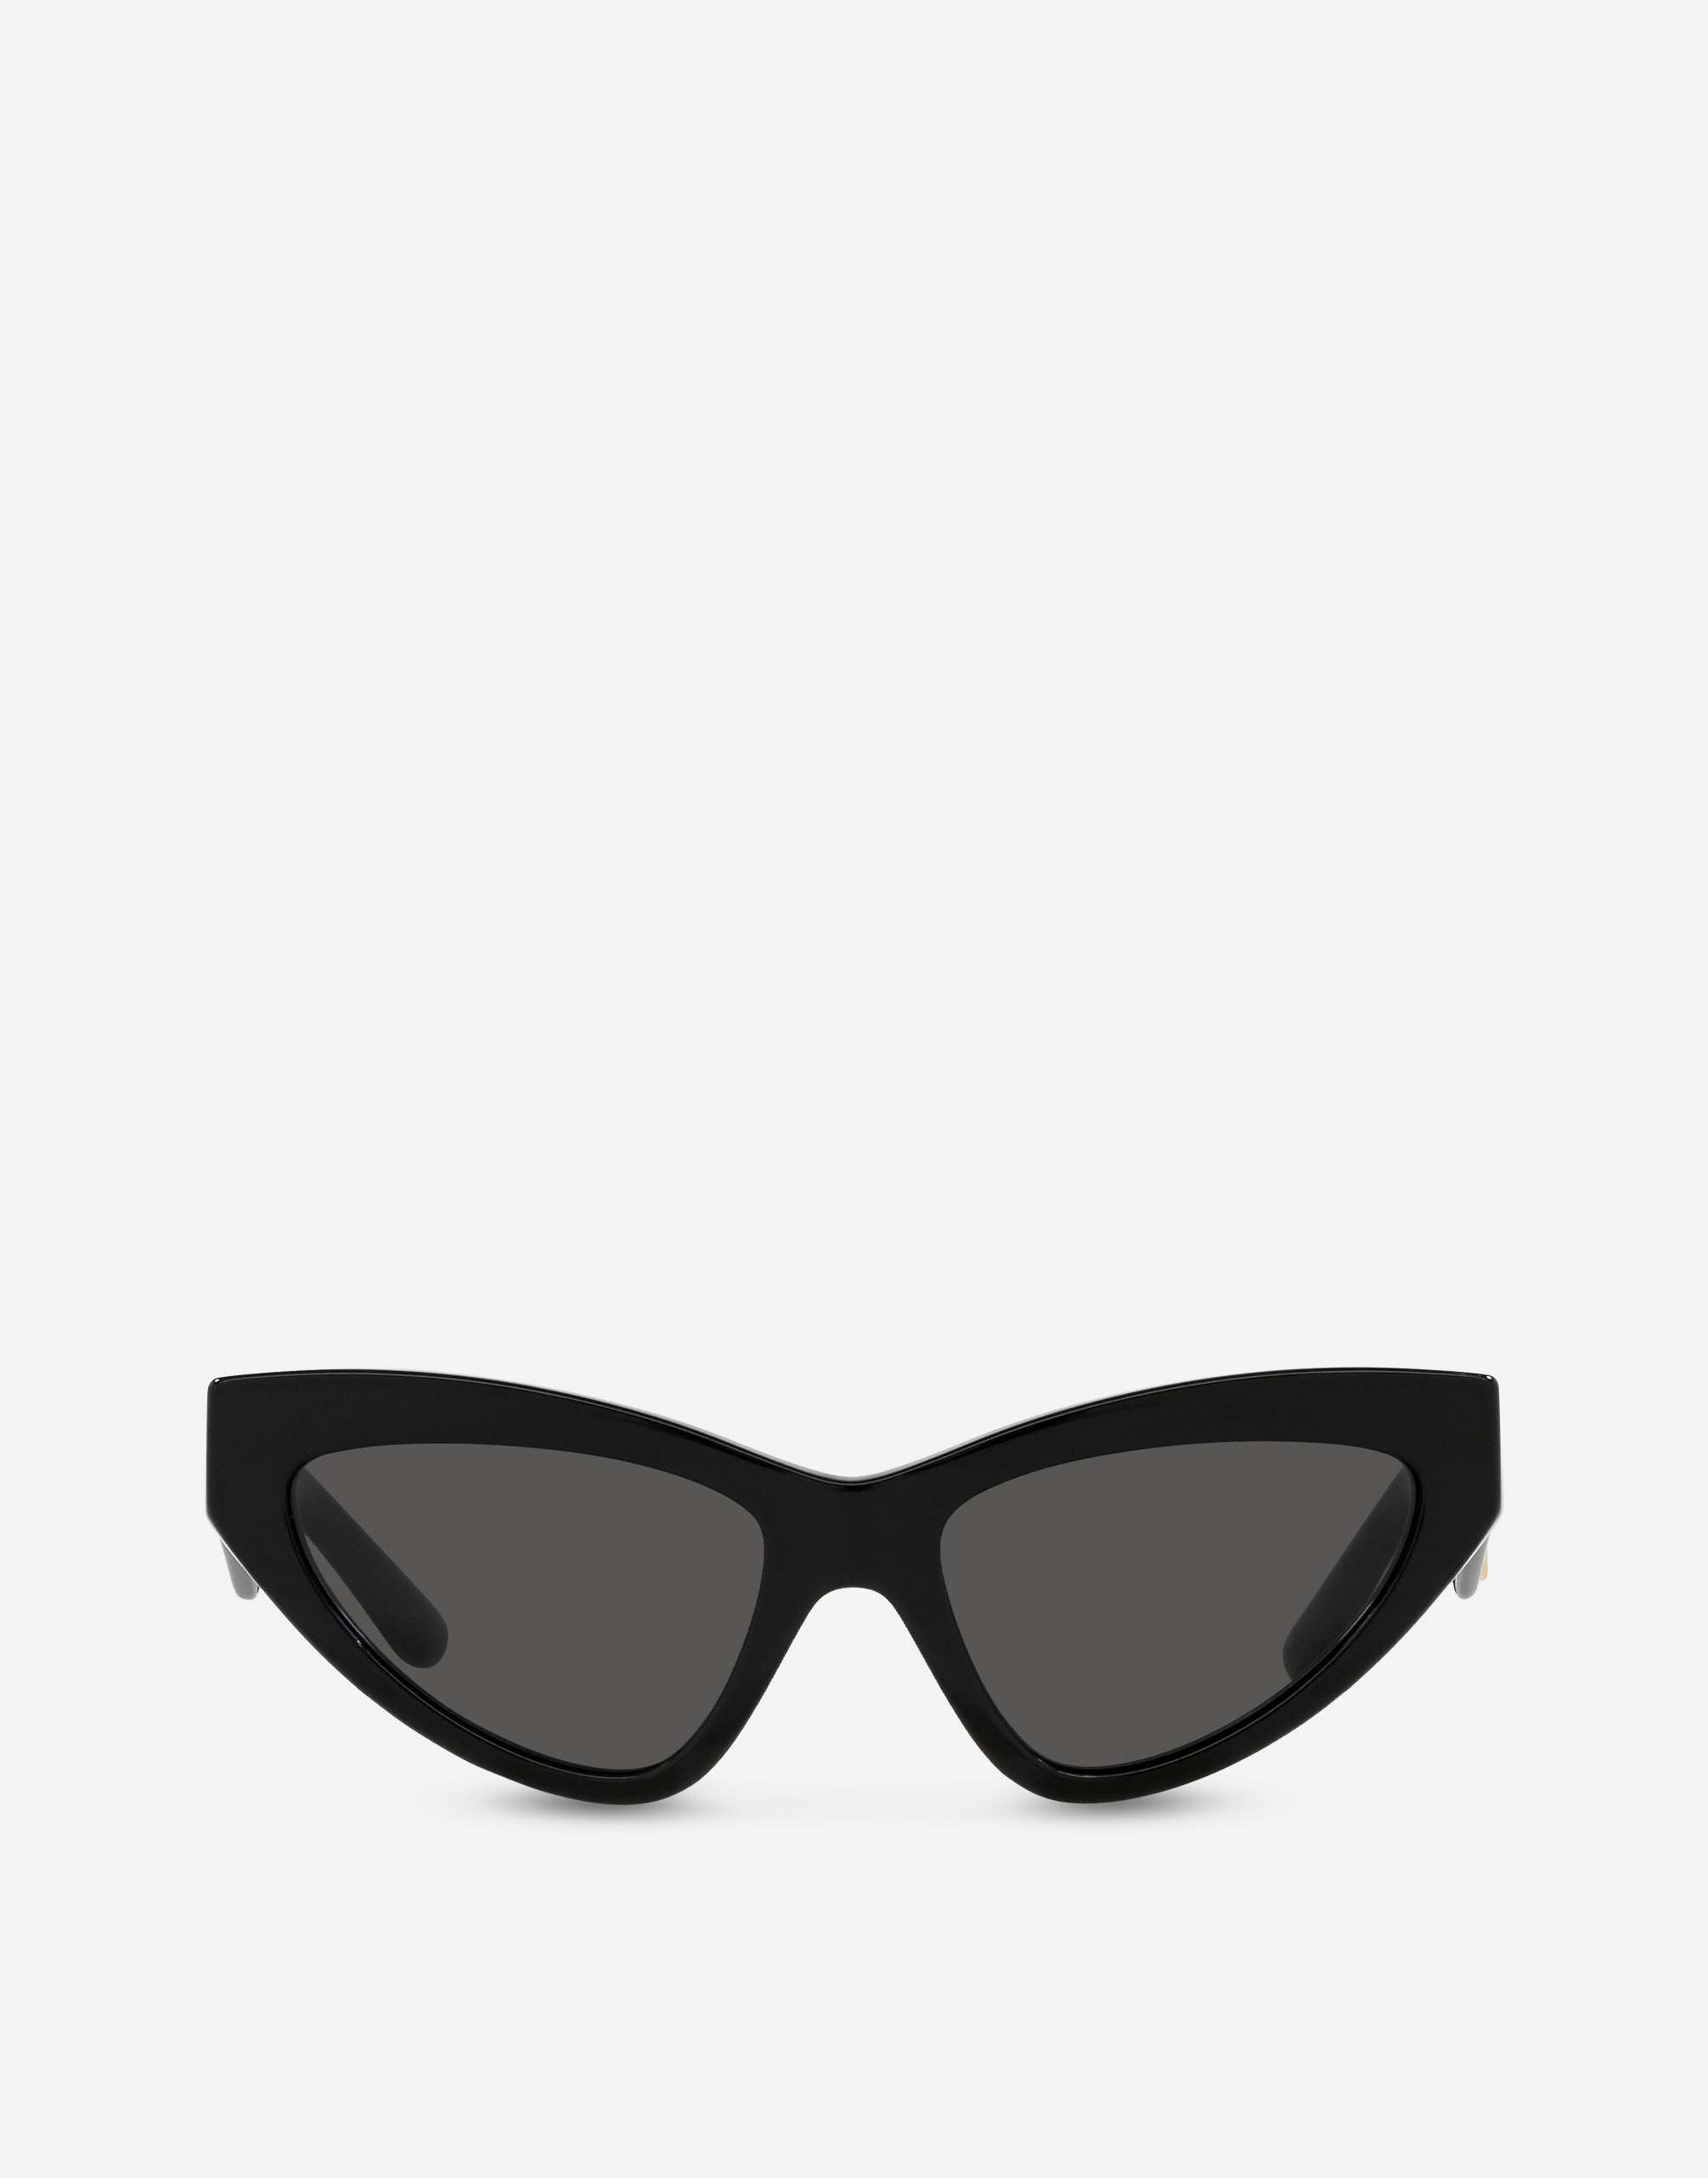 DG Crossed Sunglasses in Black